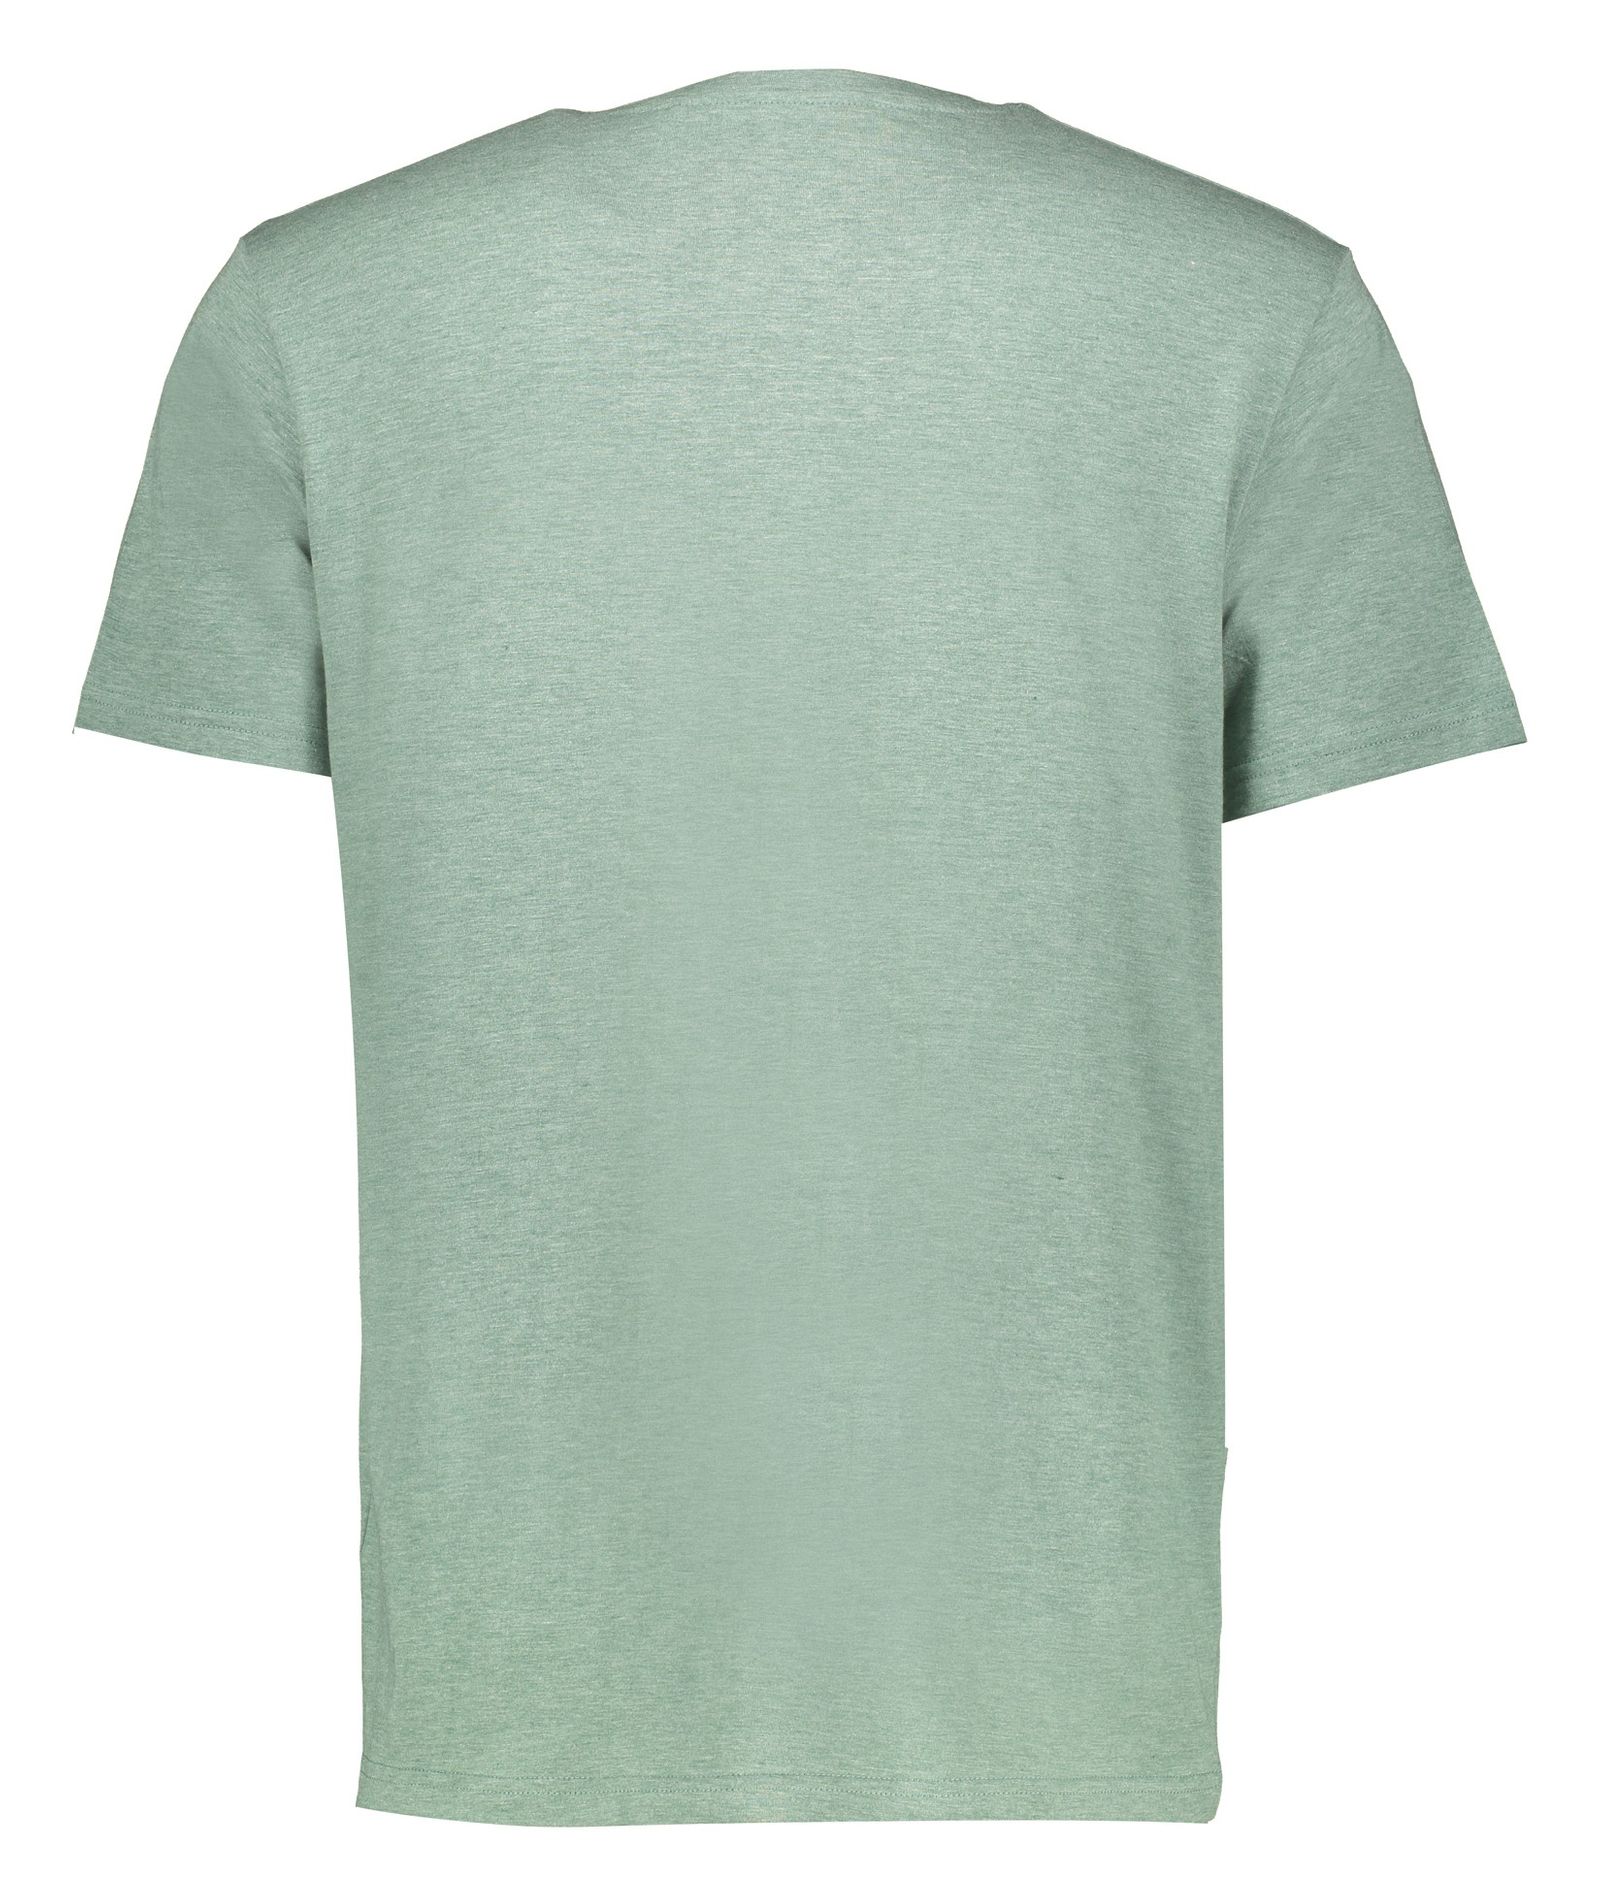 تی شرت مردانه زی سا مدل 153113178 -  - 4